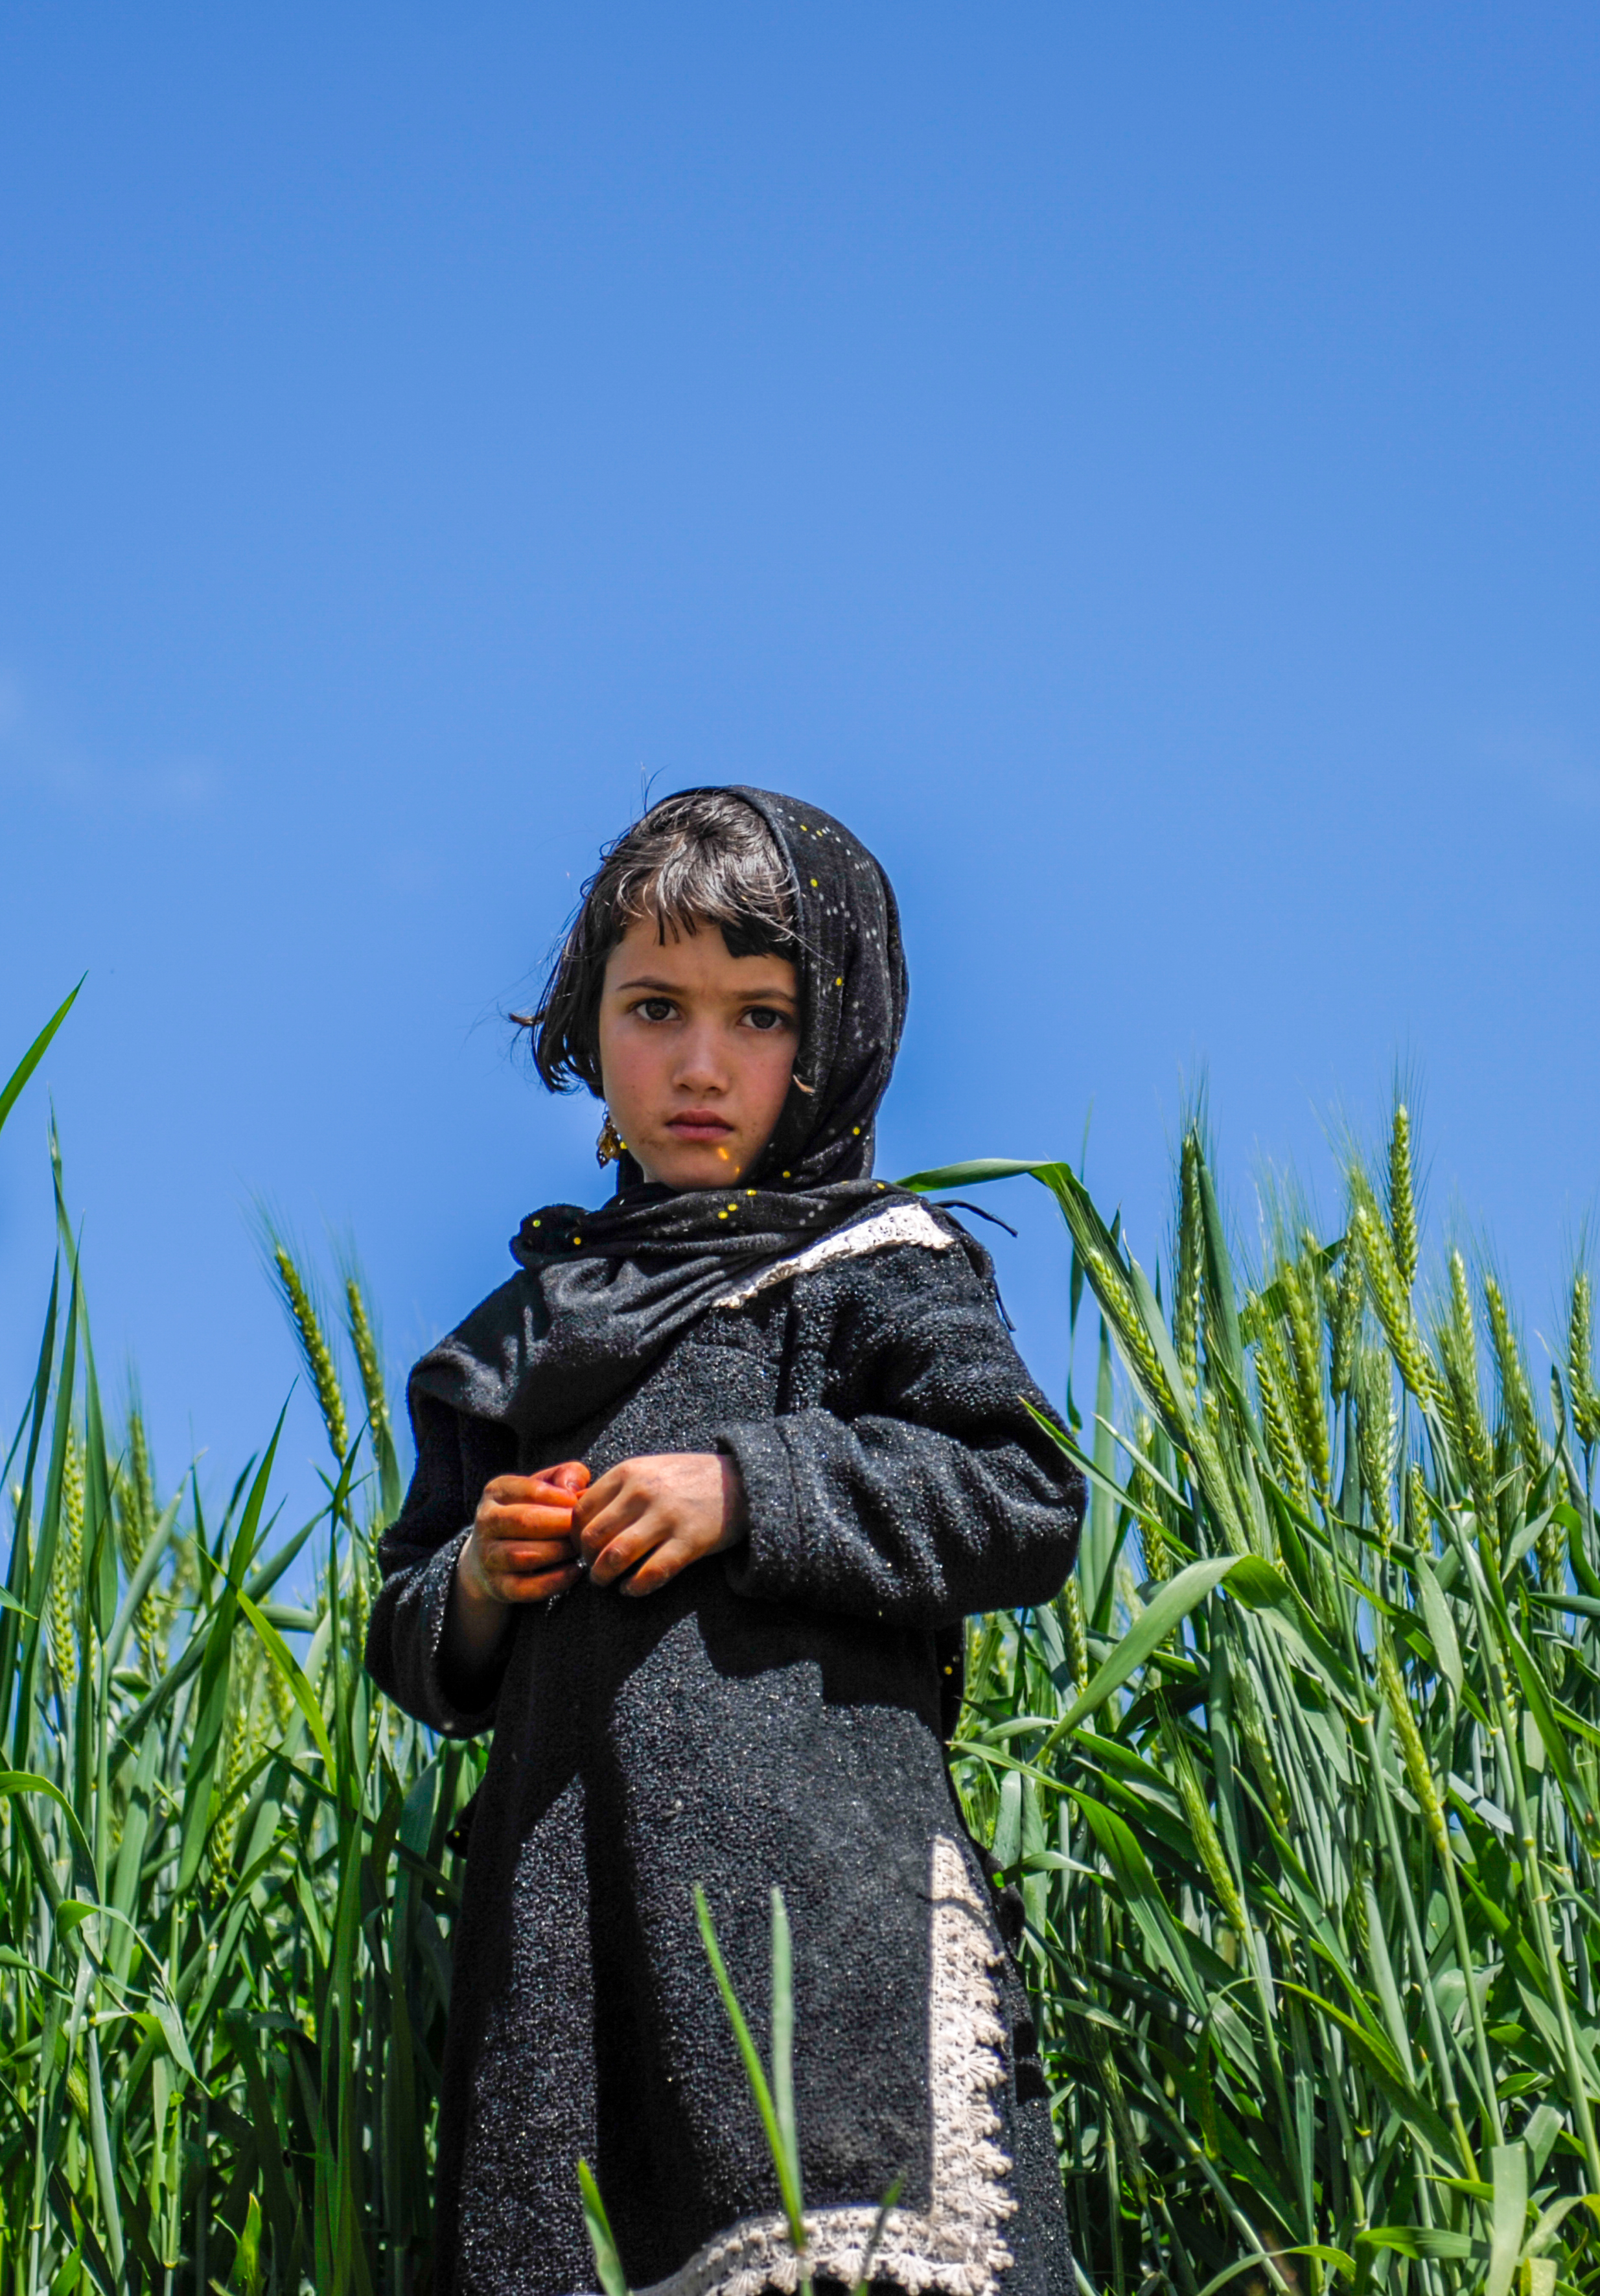 2009年4月9日,阿富汗东北部山区的农村小女孩站在小麦田间